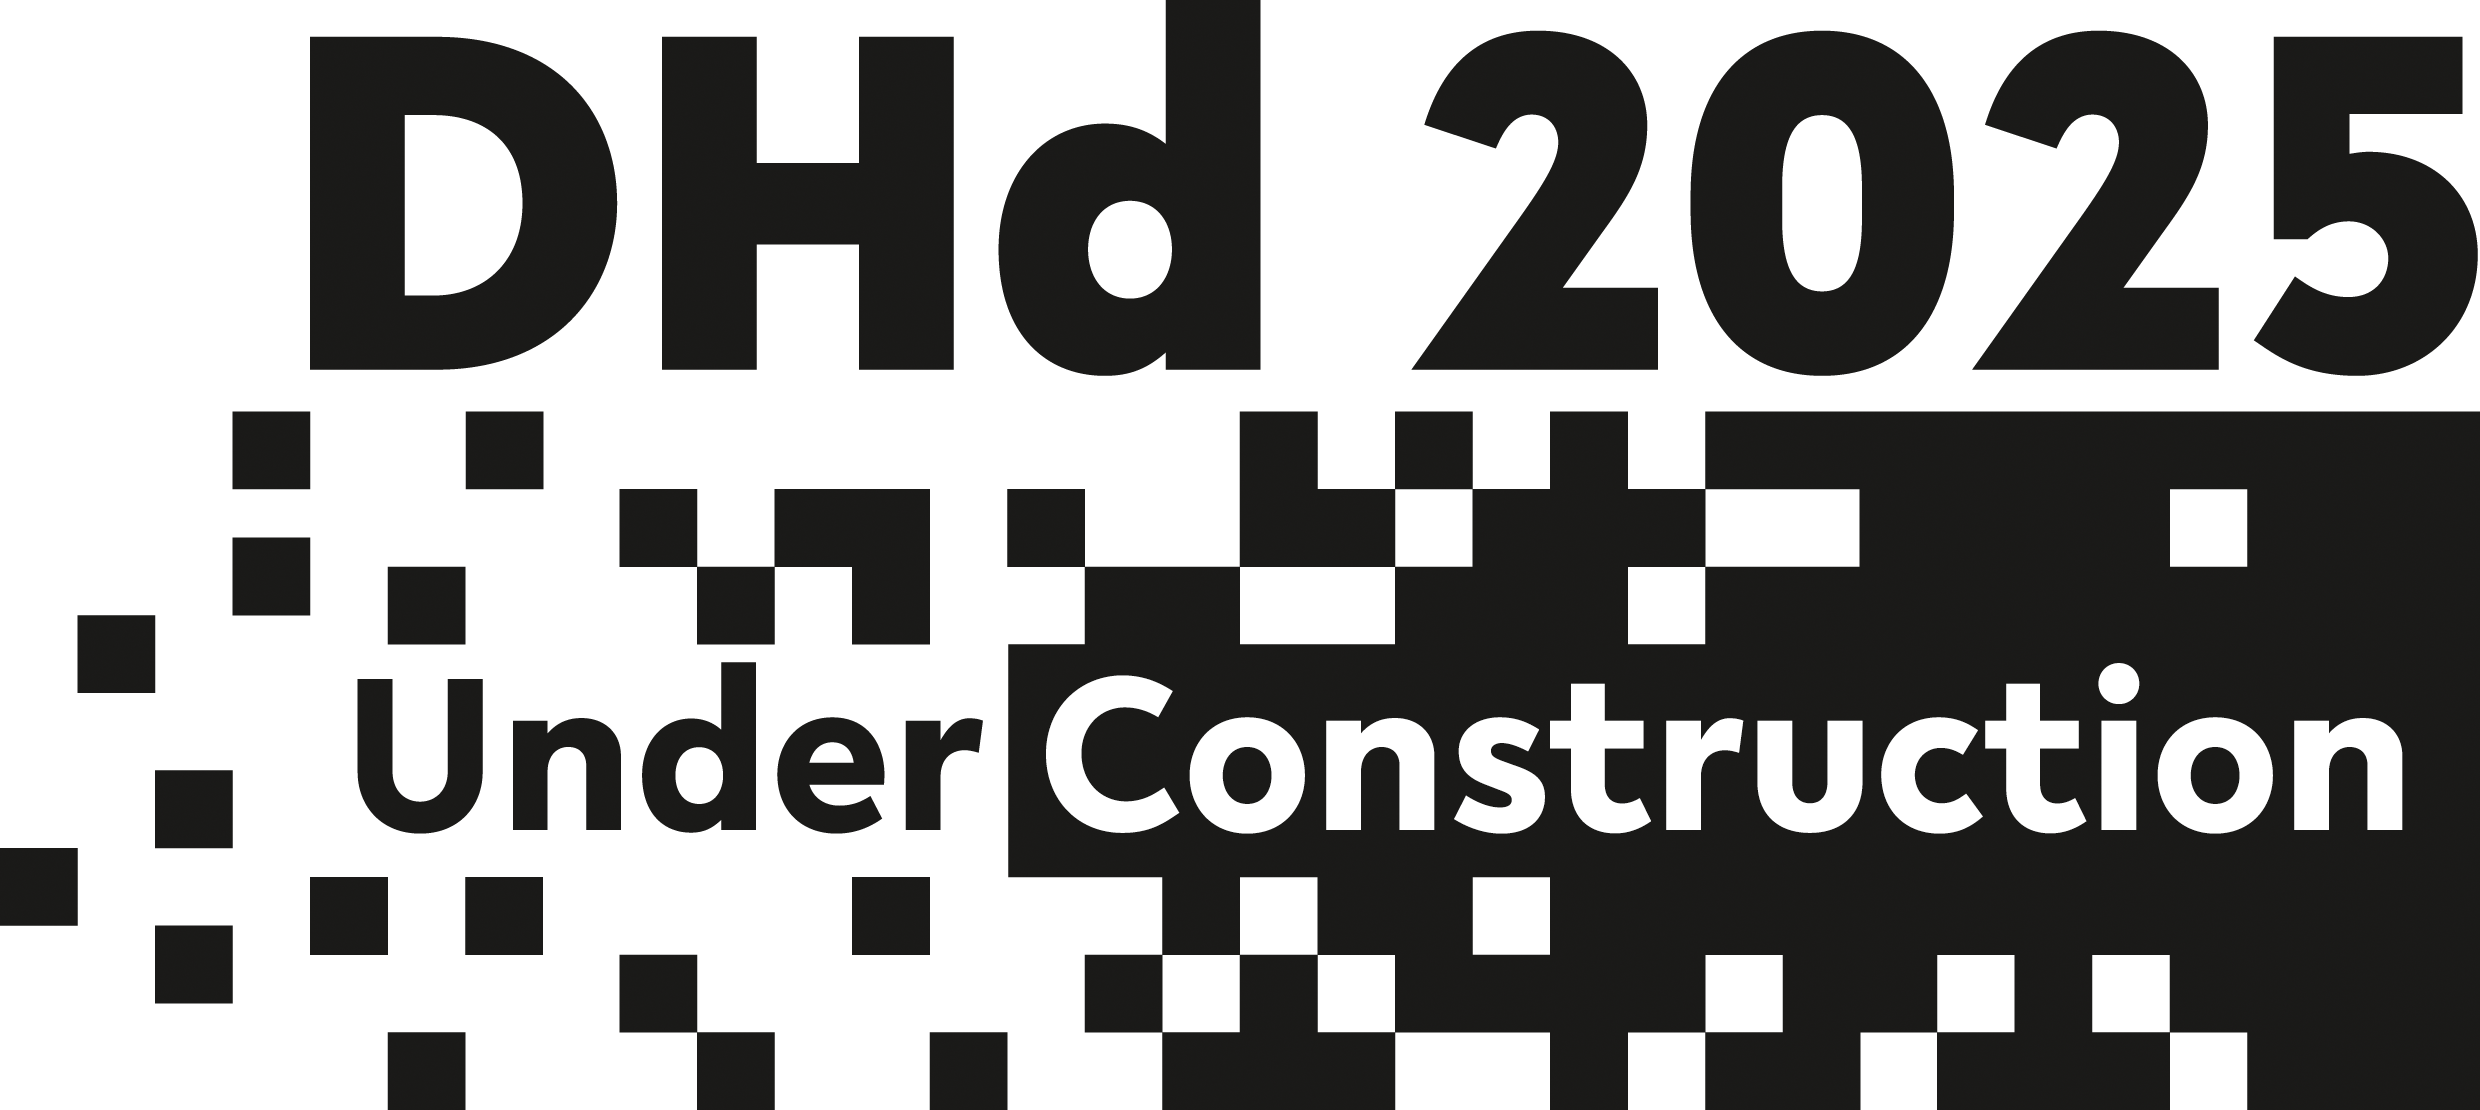 Logo der Tagung DHd 2025. Es beinhaltet den Schriftzug "DHd 2025. Under Construction", welcher in einer Struktur aus schwarzen Pixeln besteht. Diese Pixel formen von links nach rechts eine feste Struktur.